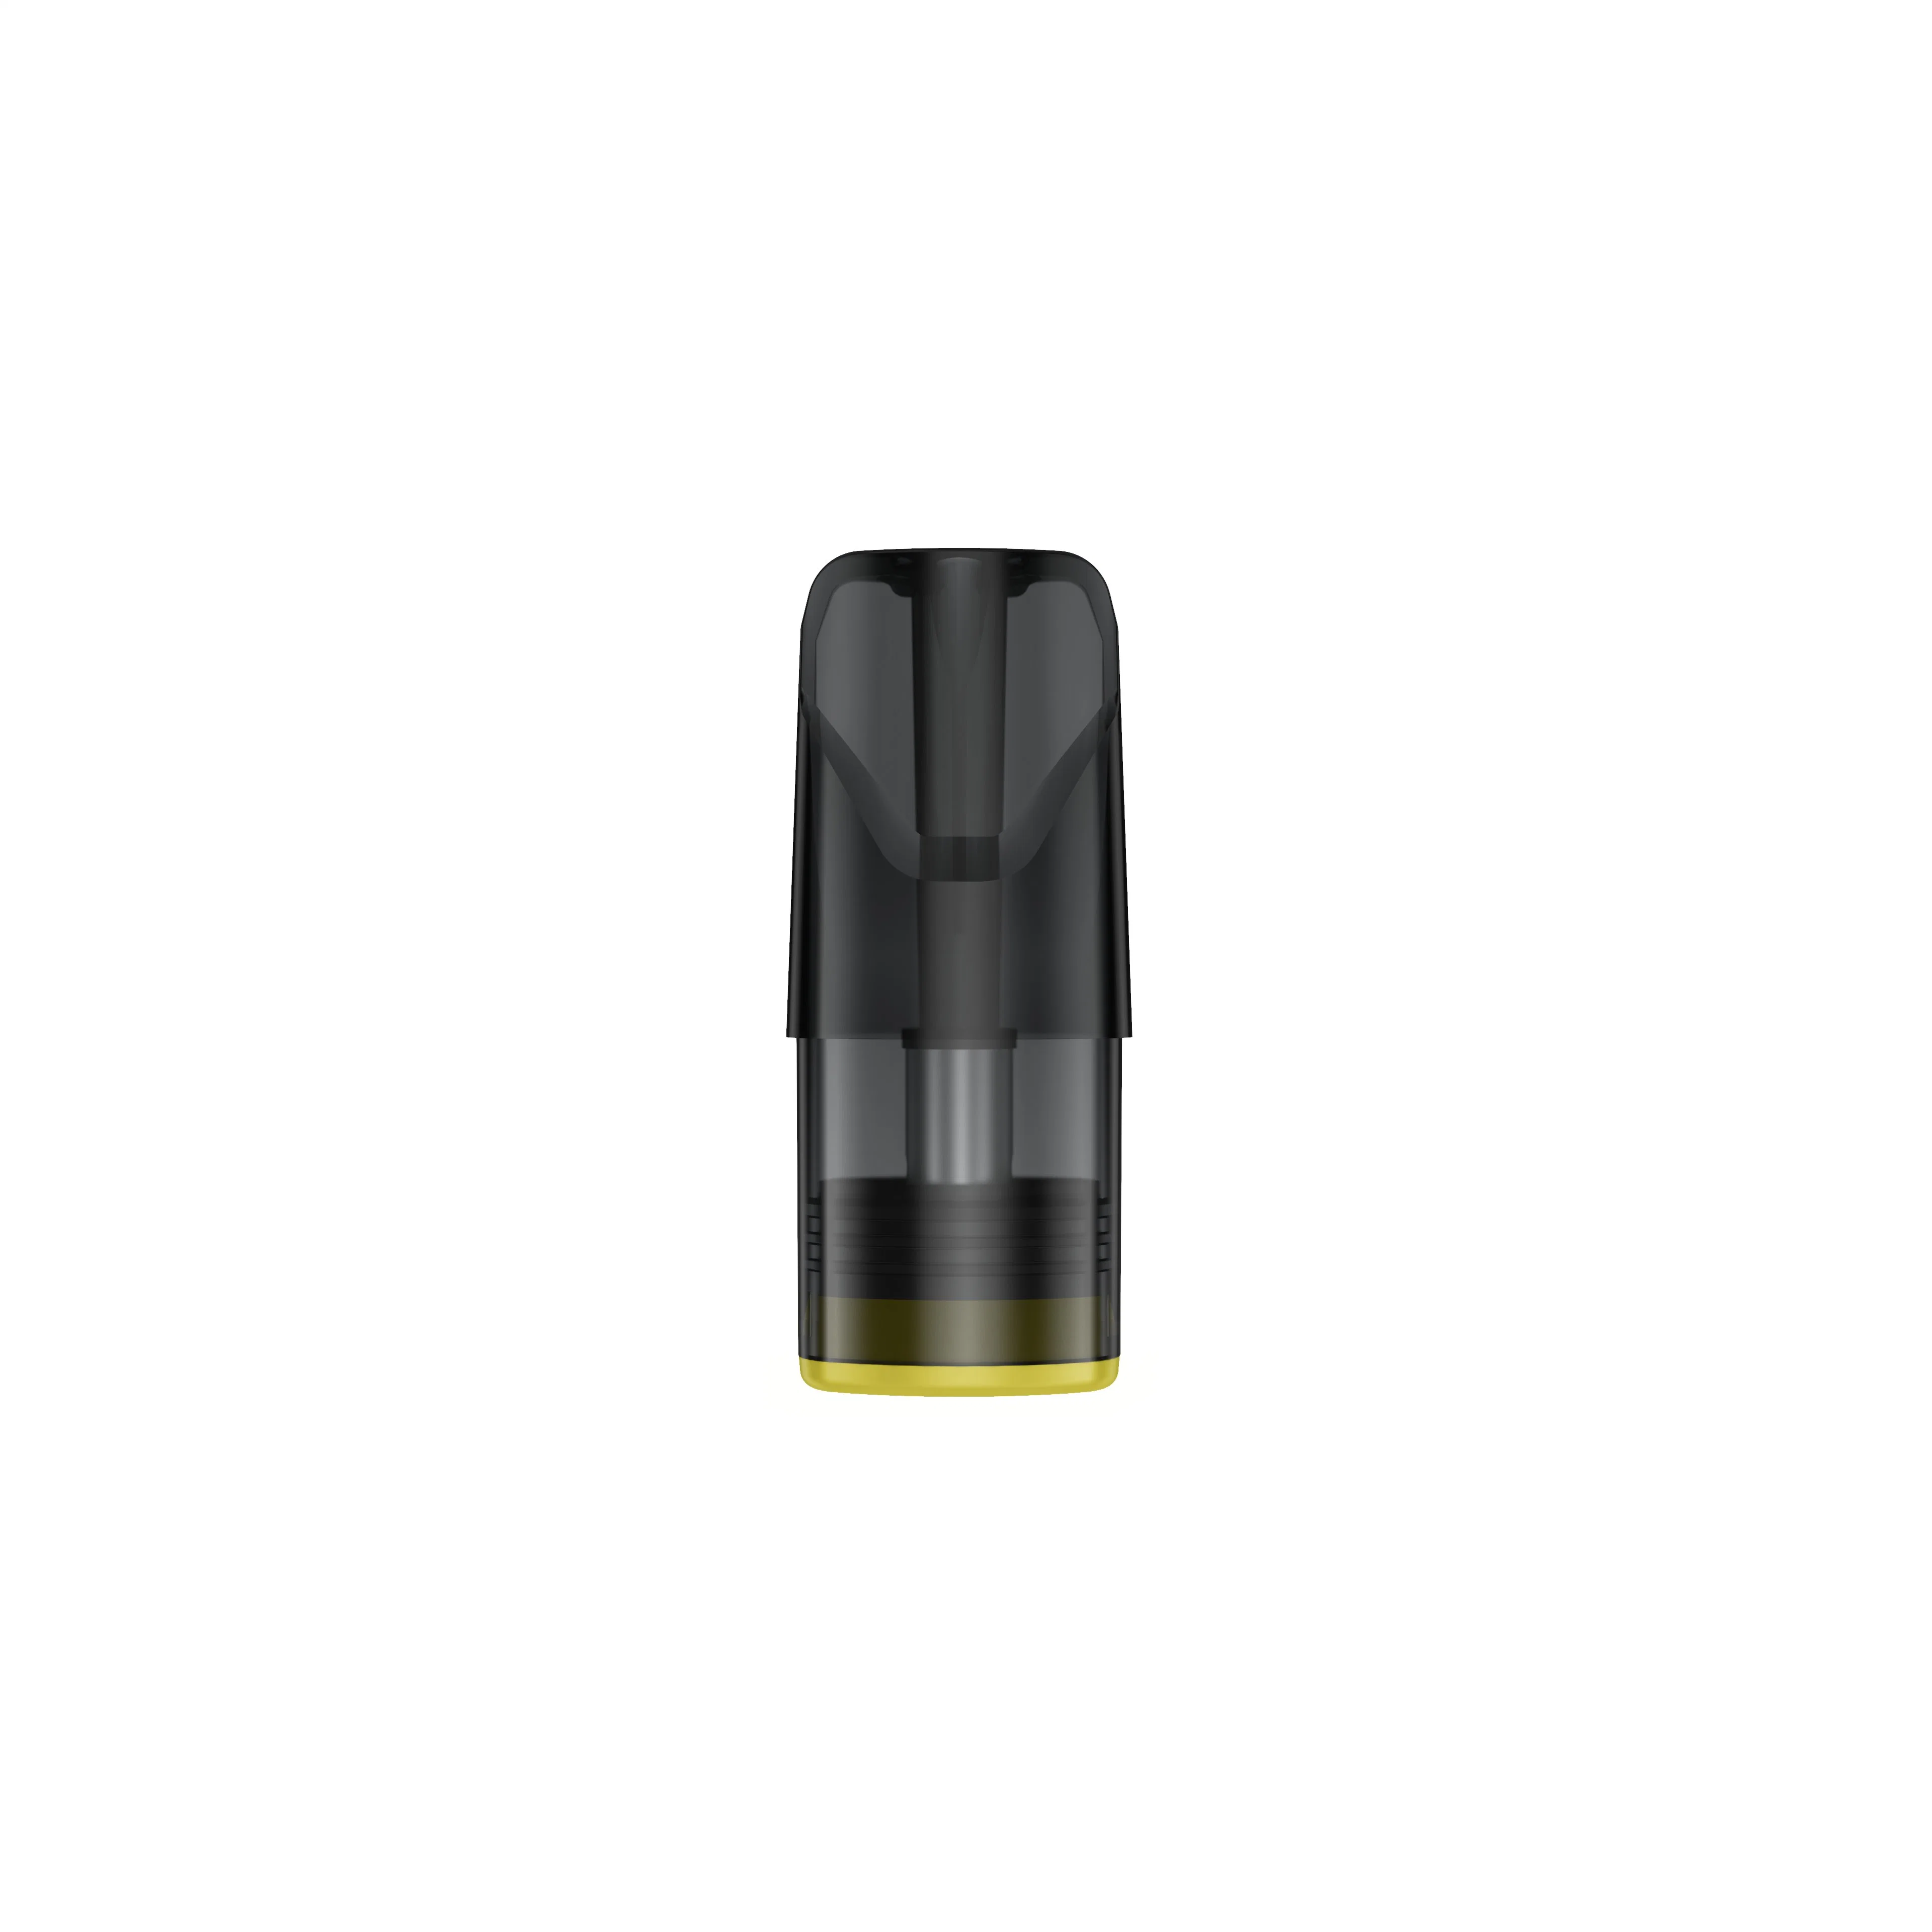 E-Cigarette Disposable Electronic Atomizer Vape 2ml Vape Cartridge